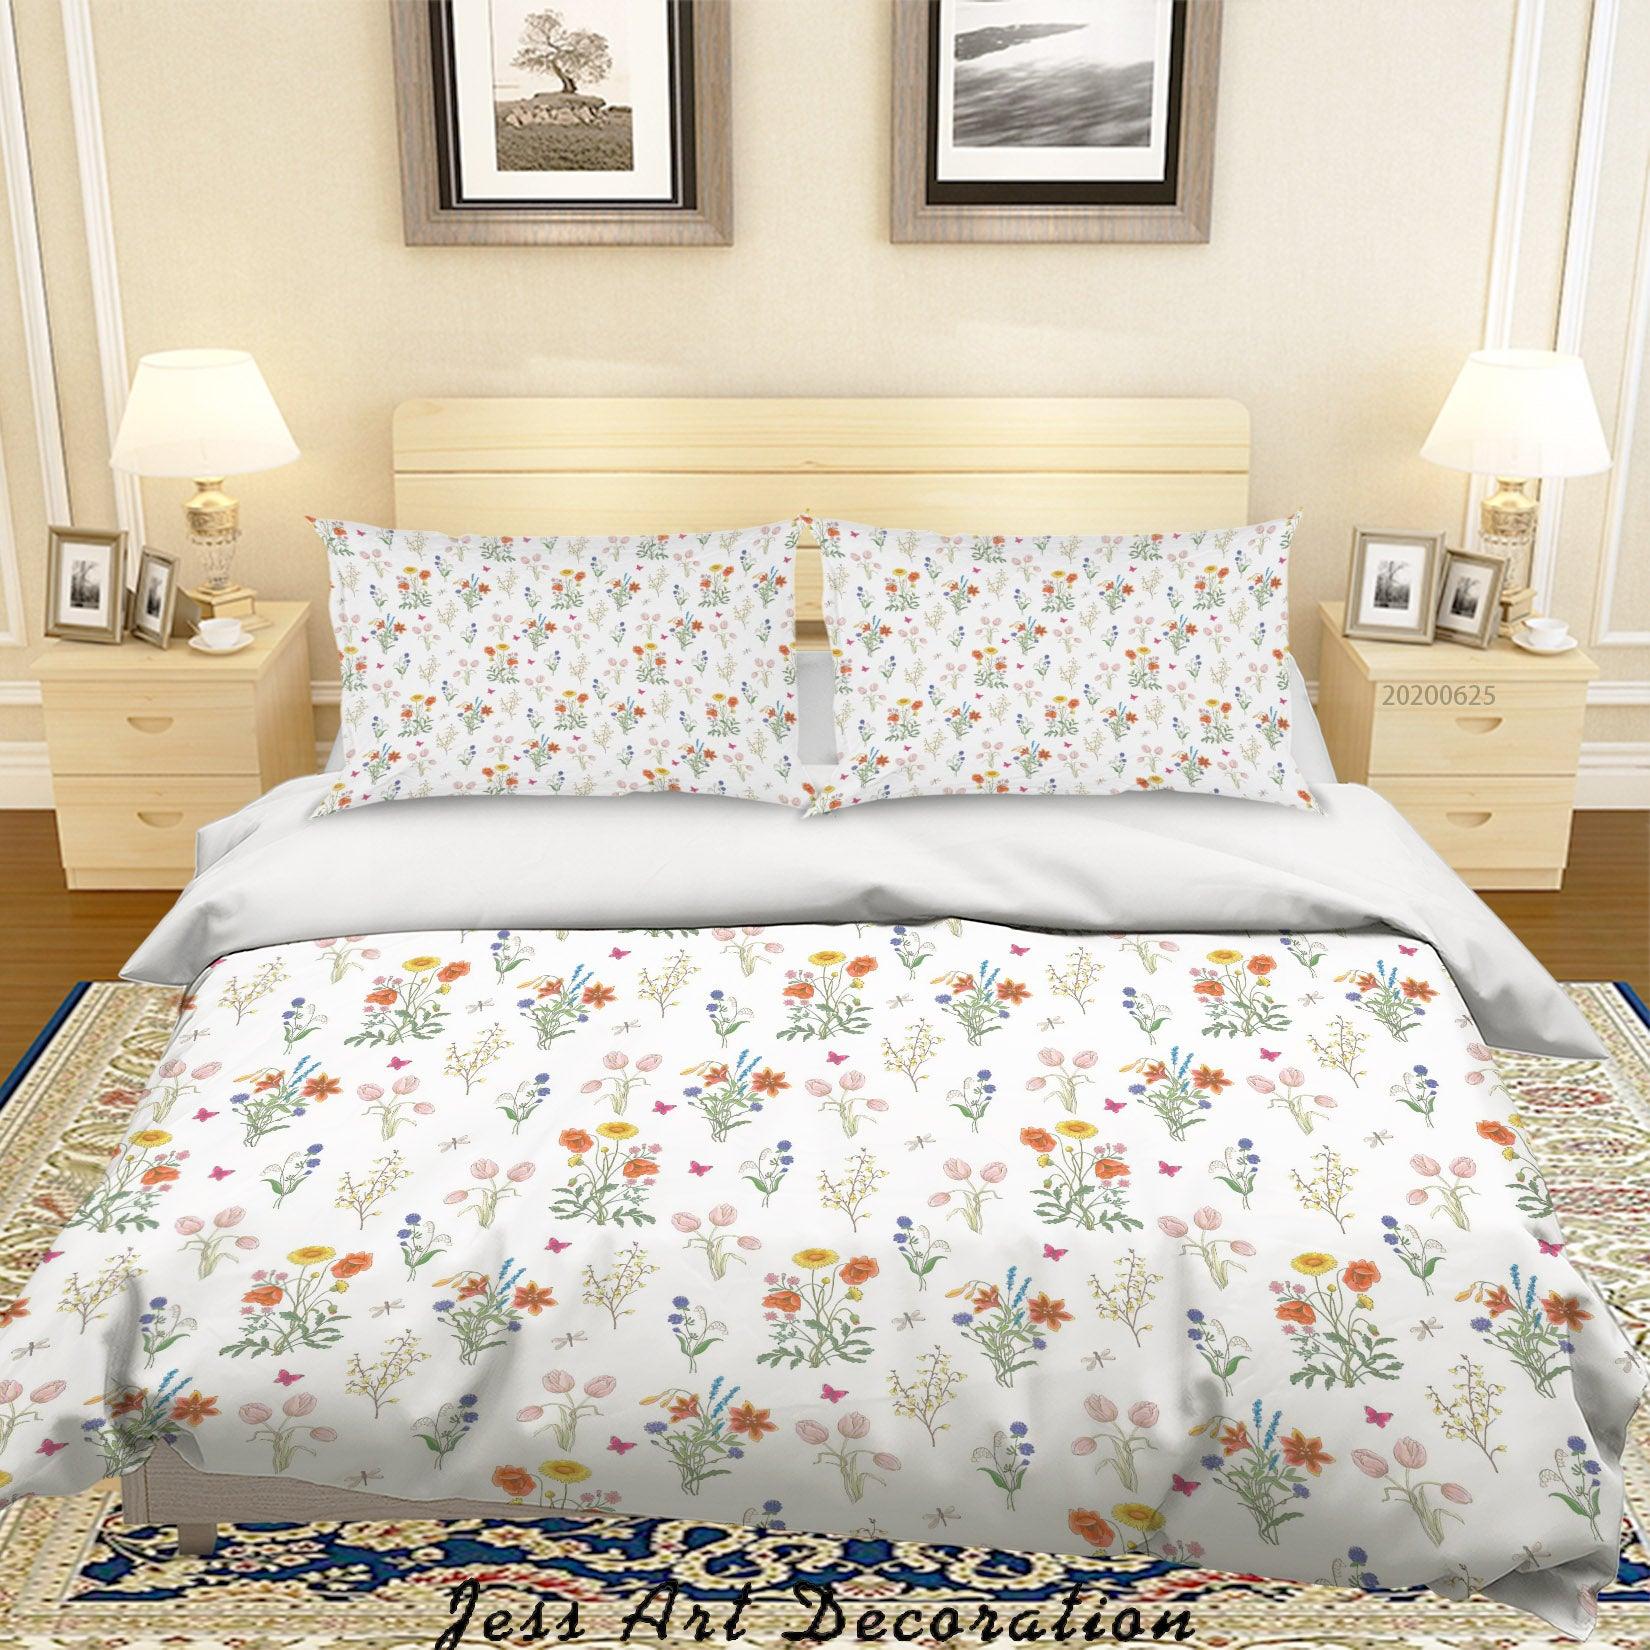 3D White Floral Quilt Cover Set Bedding Set Duvet Cover Pillowcases SF138- Jess Art Decoration